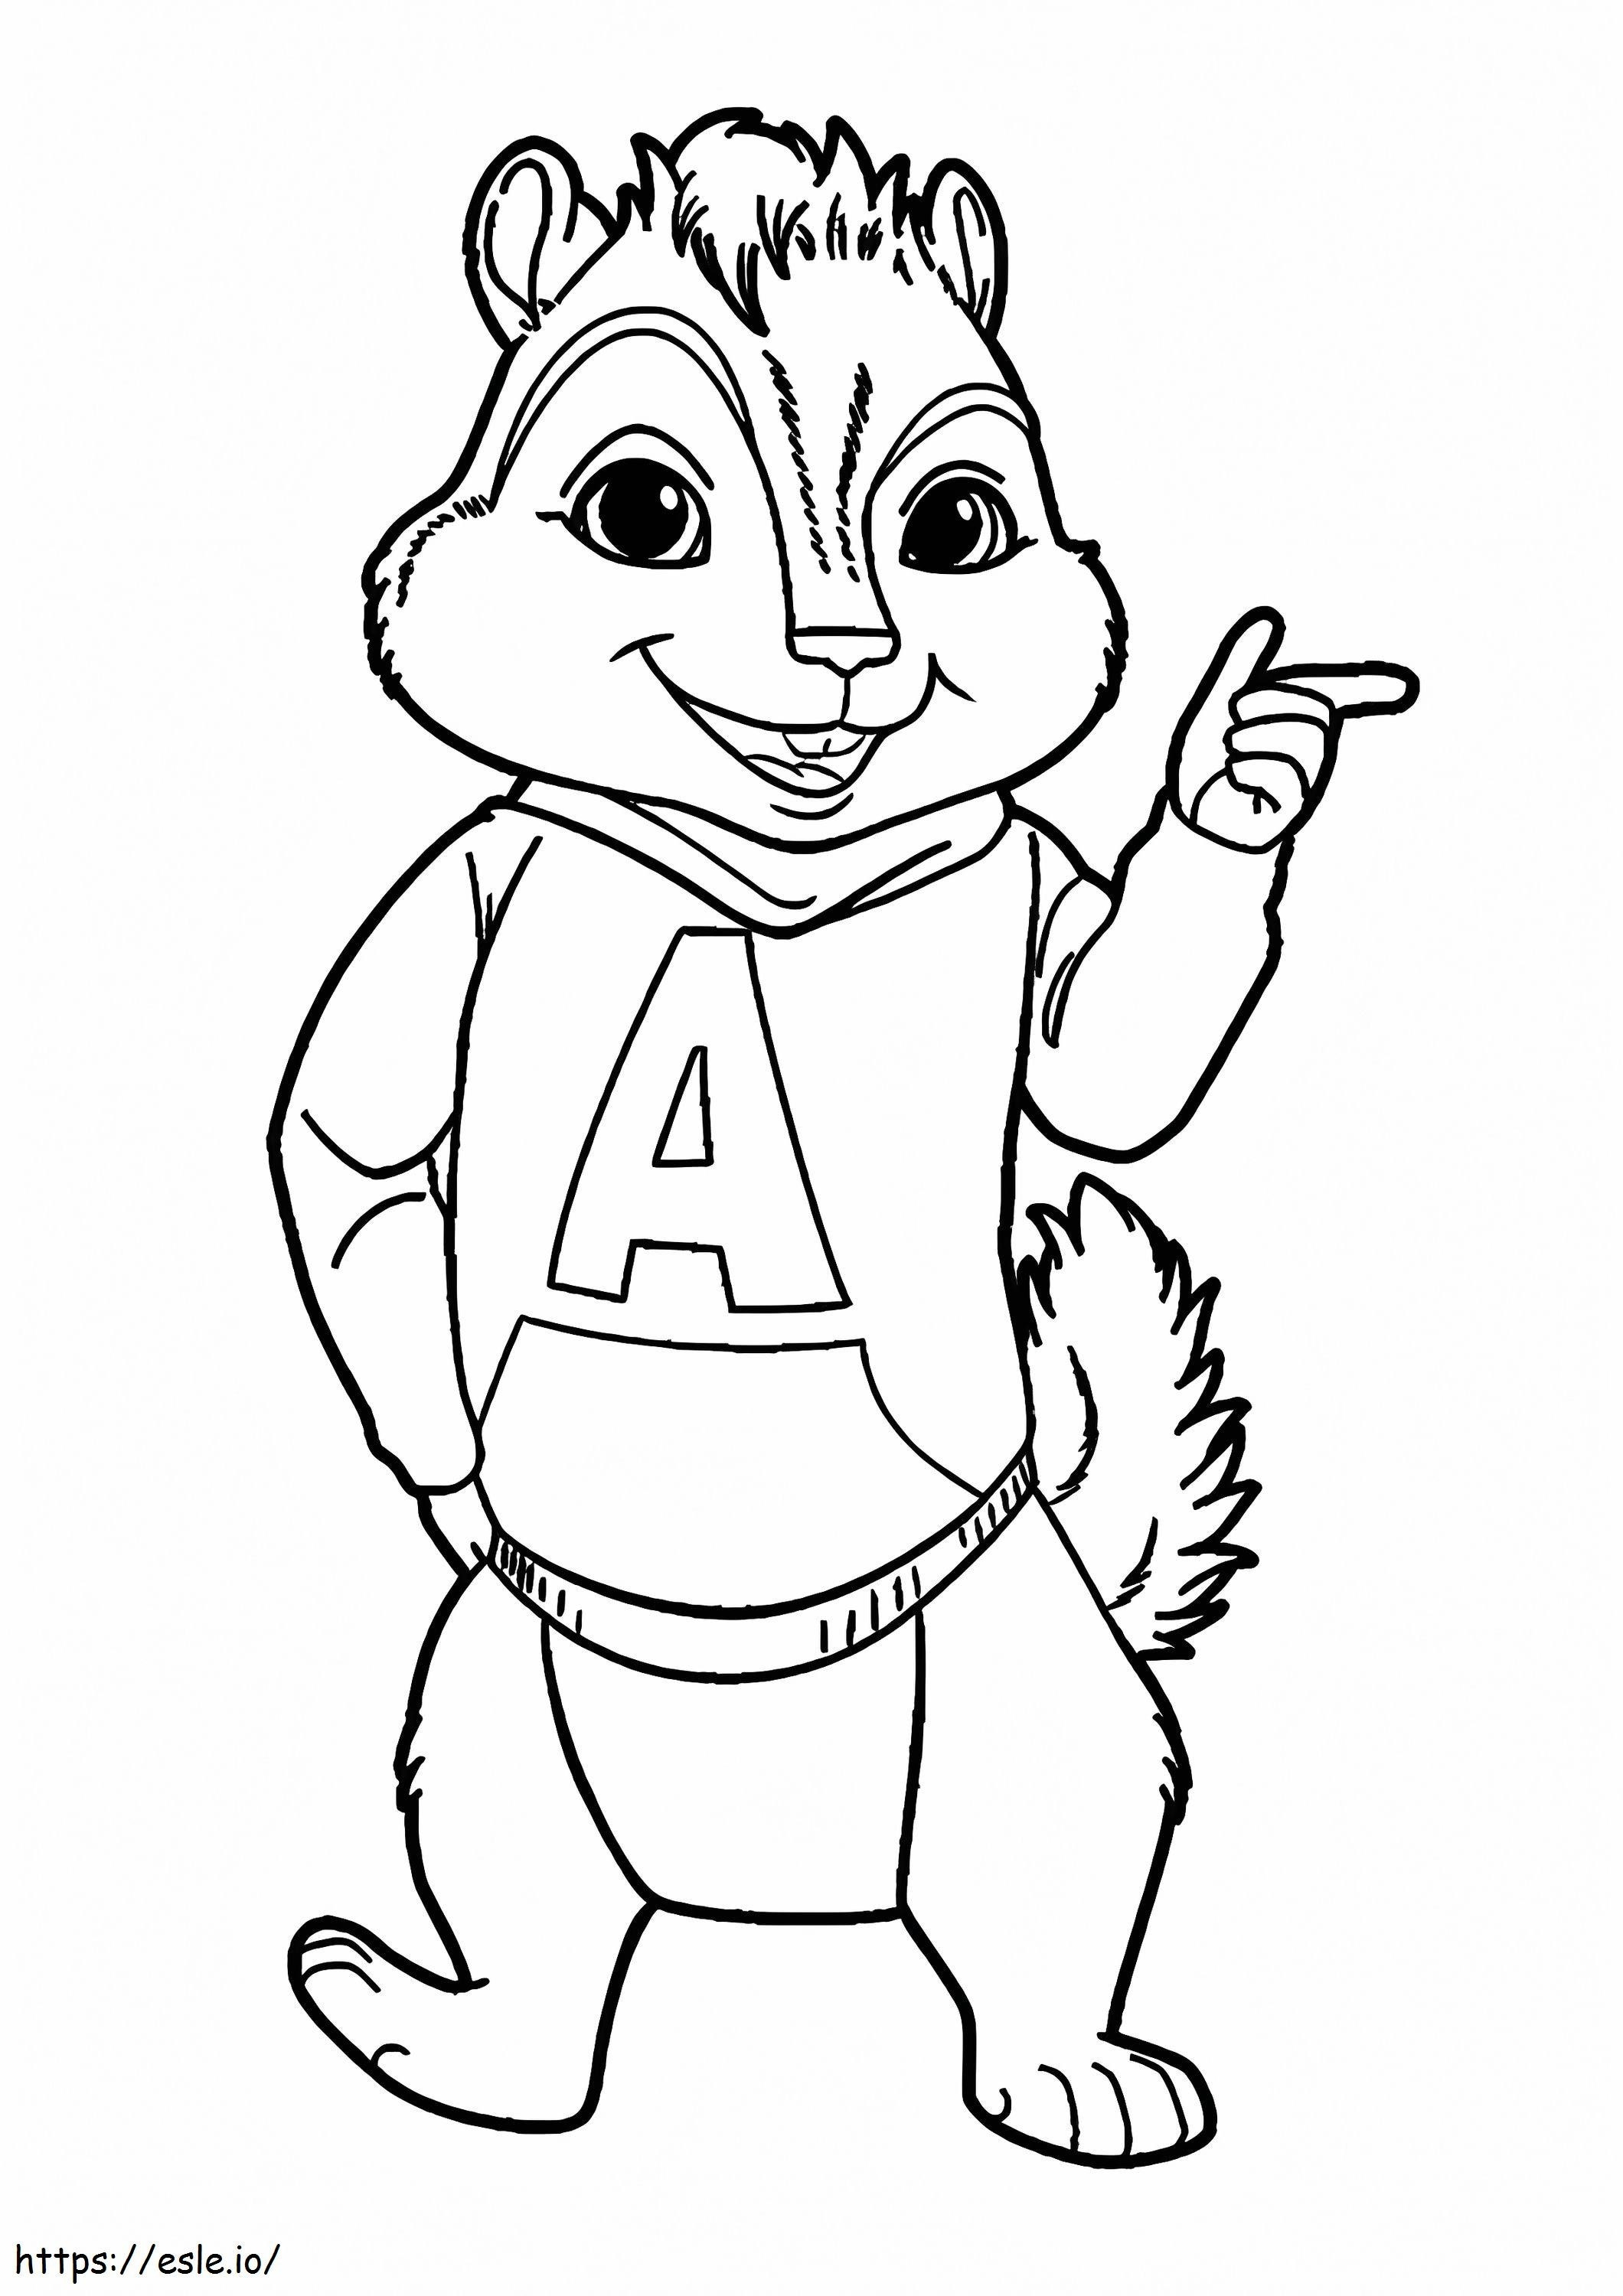 Coloriage  Cool Alvin dans Alvin et le Chipmunk A4 à imprimer dessin